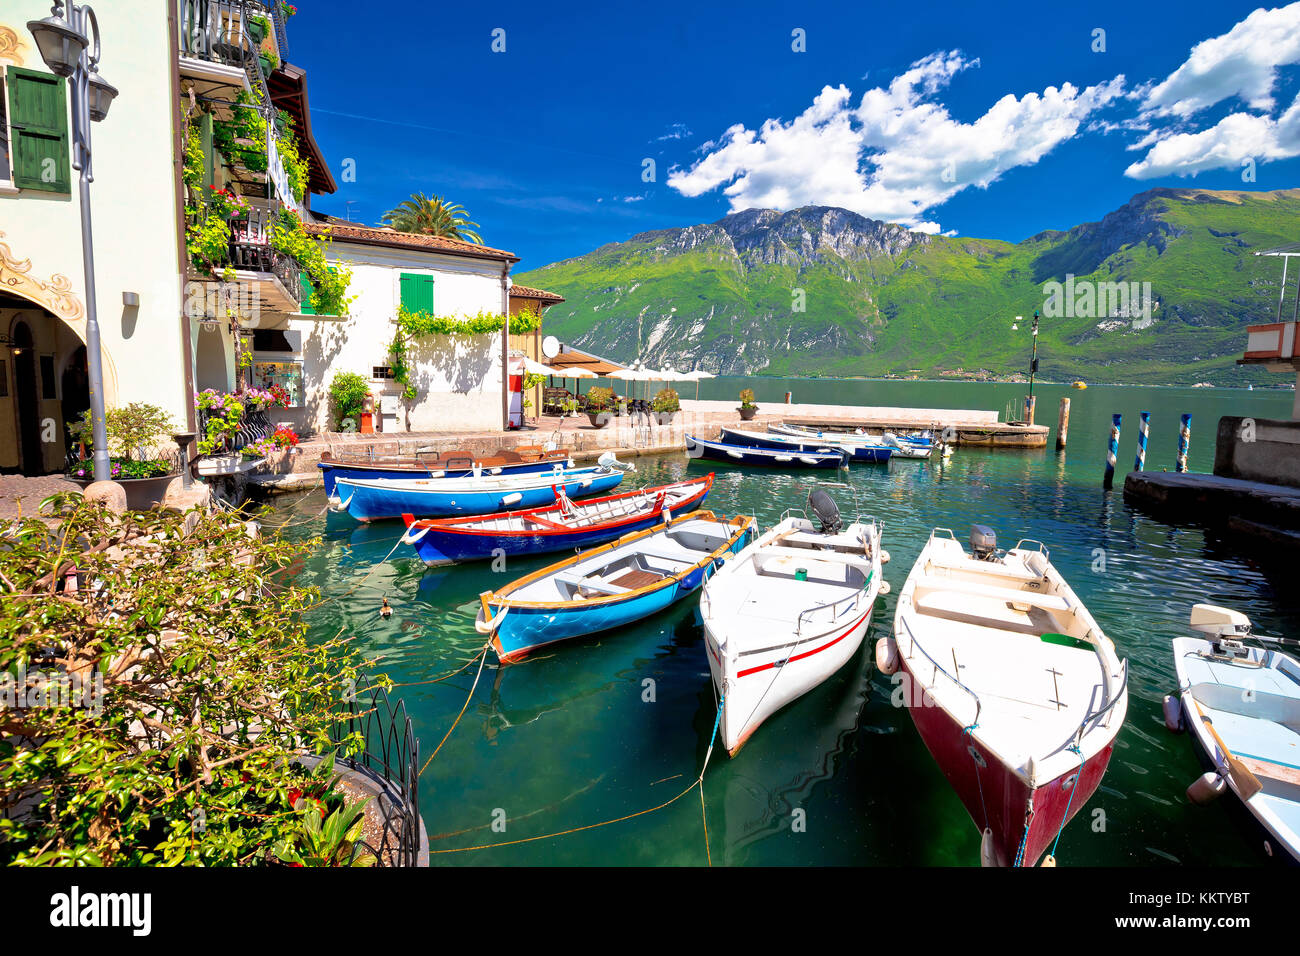 Le lac de garde dans la ville de Limone sul Garda vue front,bateaux colorés, région Lombardie Italie Banque D'Images